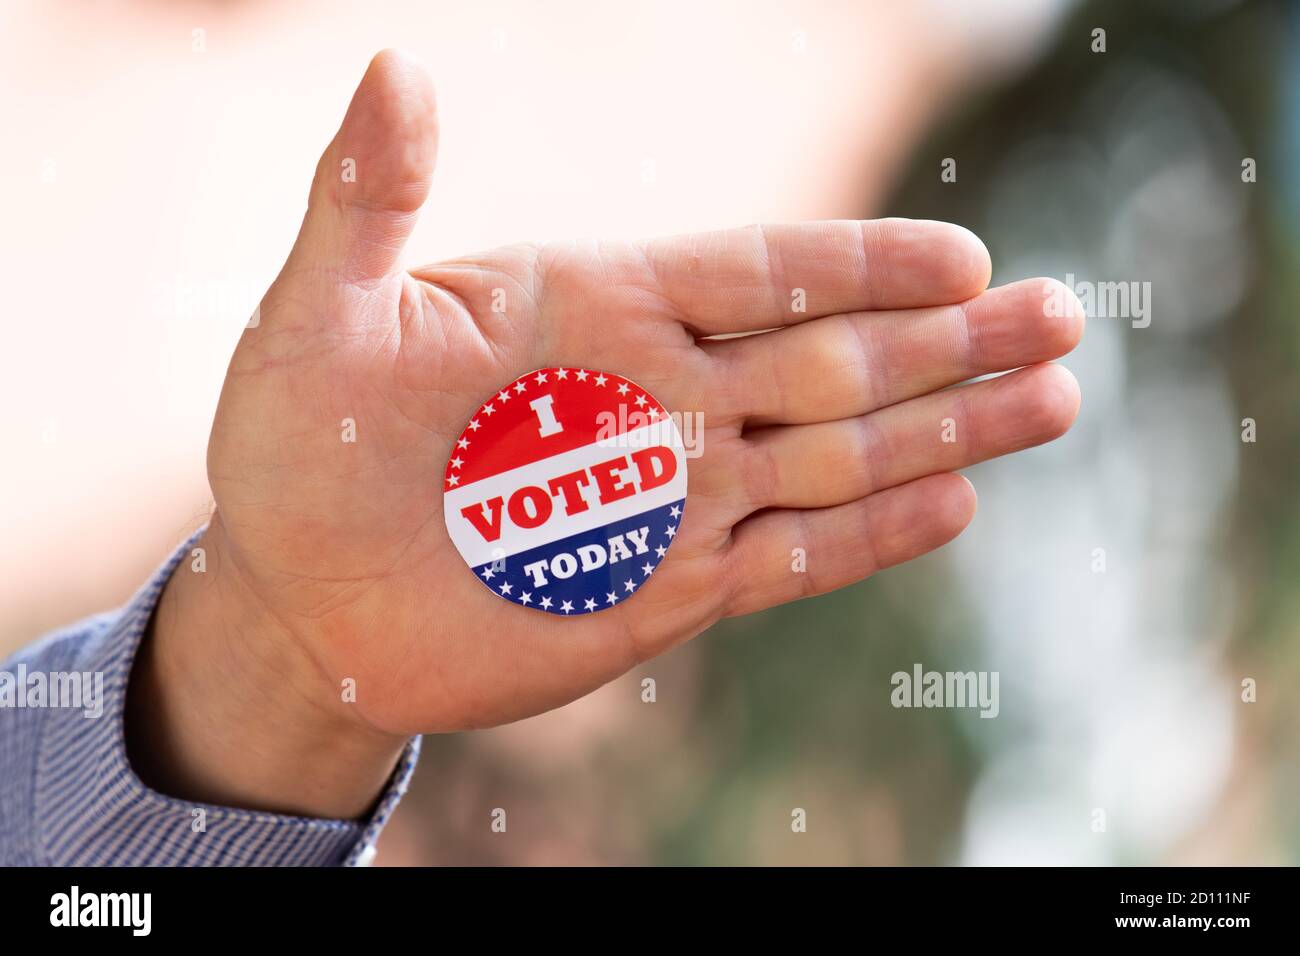 J'ai voté aujourd'hui sticker pour l'élection présidentielle aux États-Unis, politique signe sur la main humaine Banque D'Images